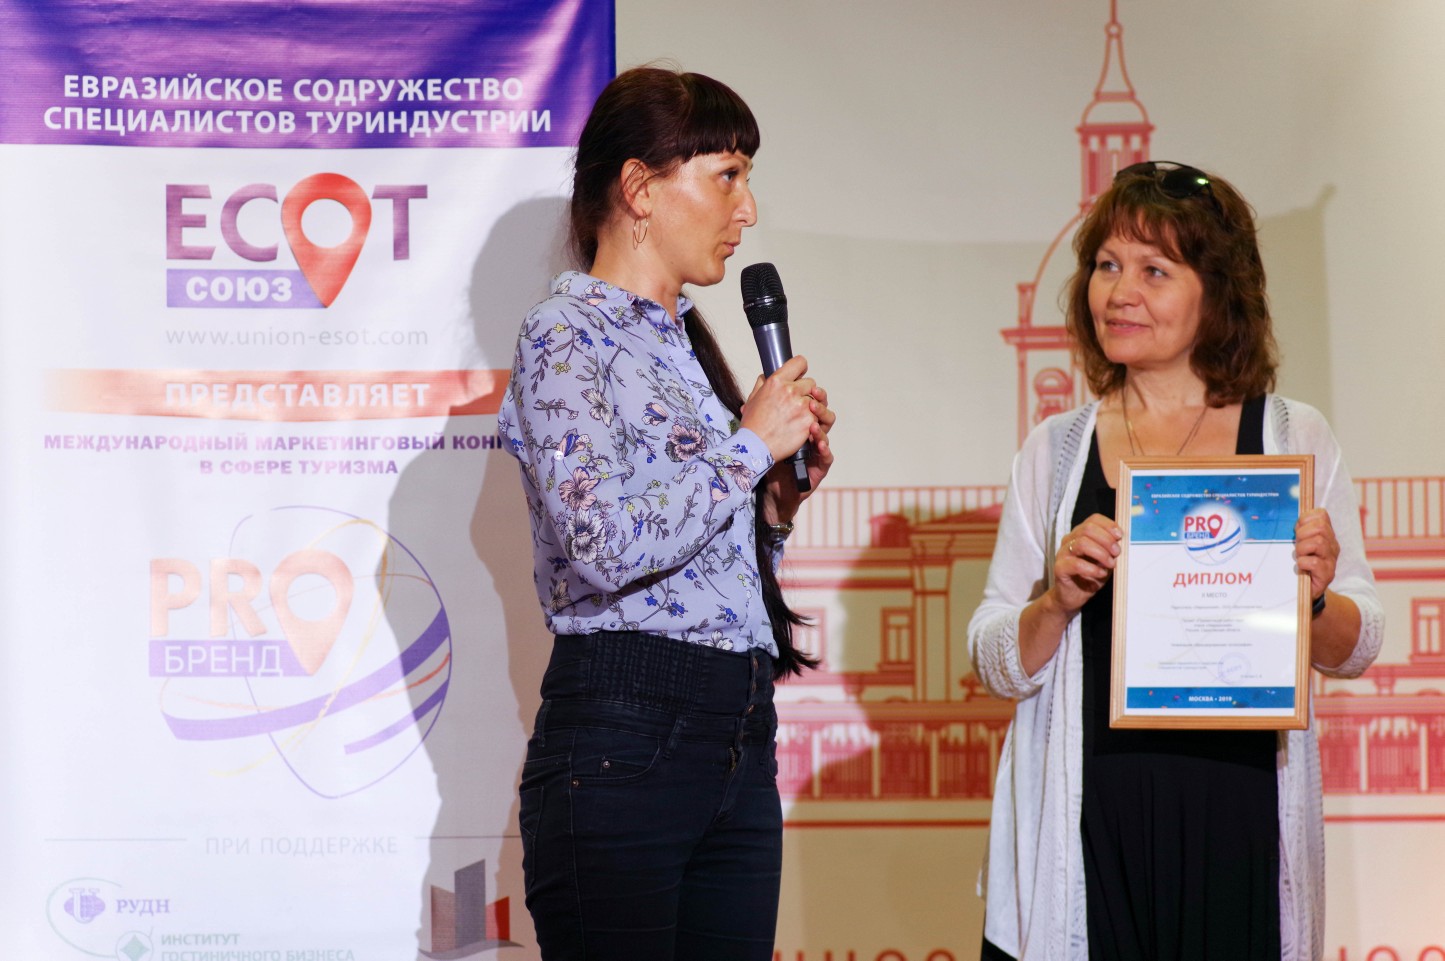 Парк-отель "Хвалынский" стал победителем конкурса "PROбренд"